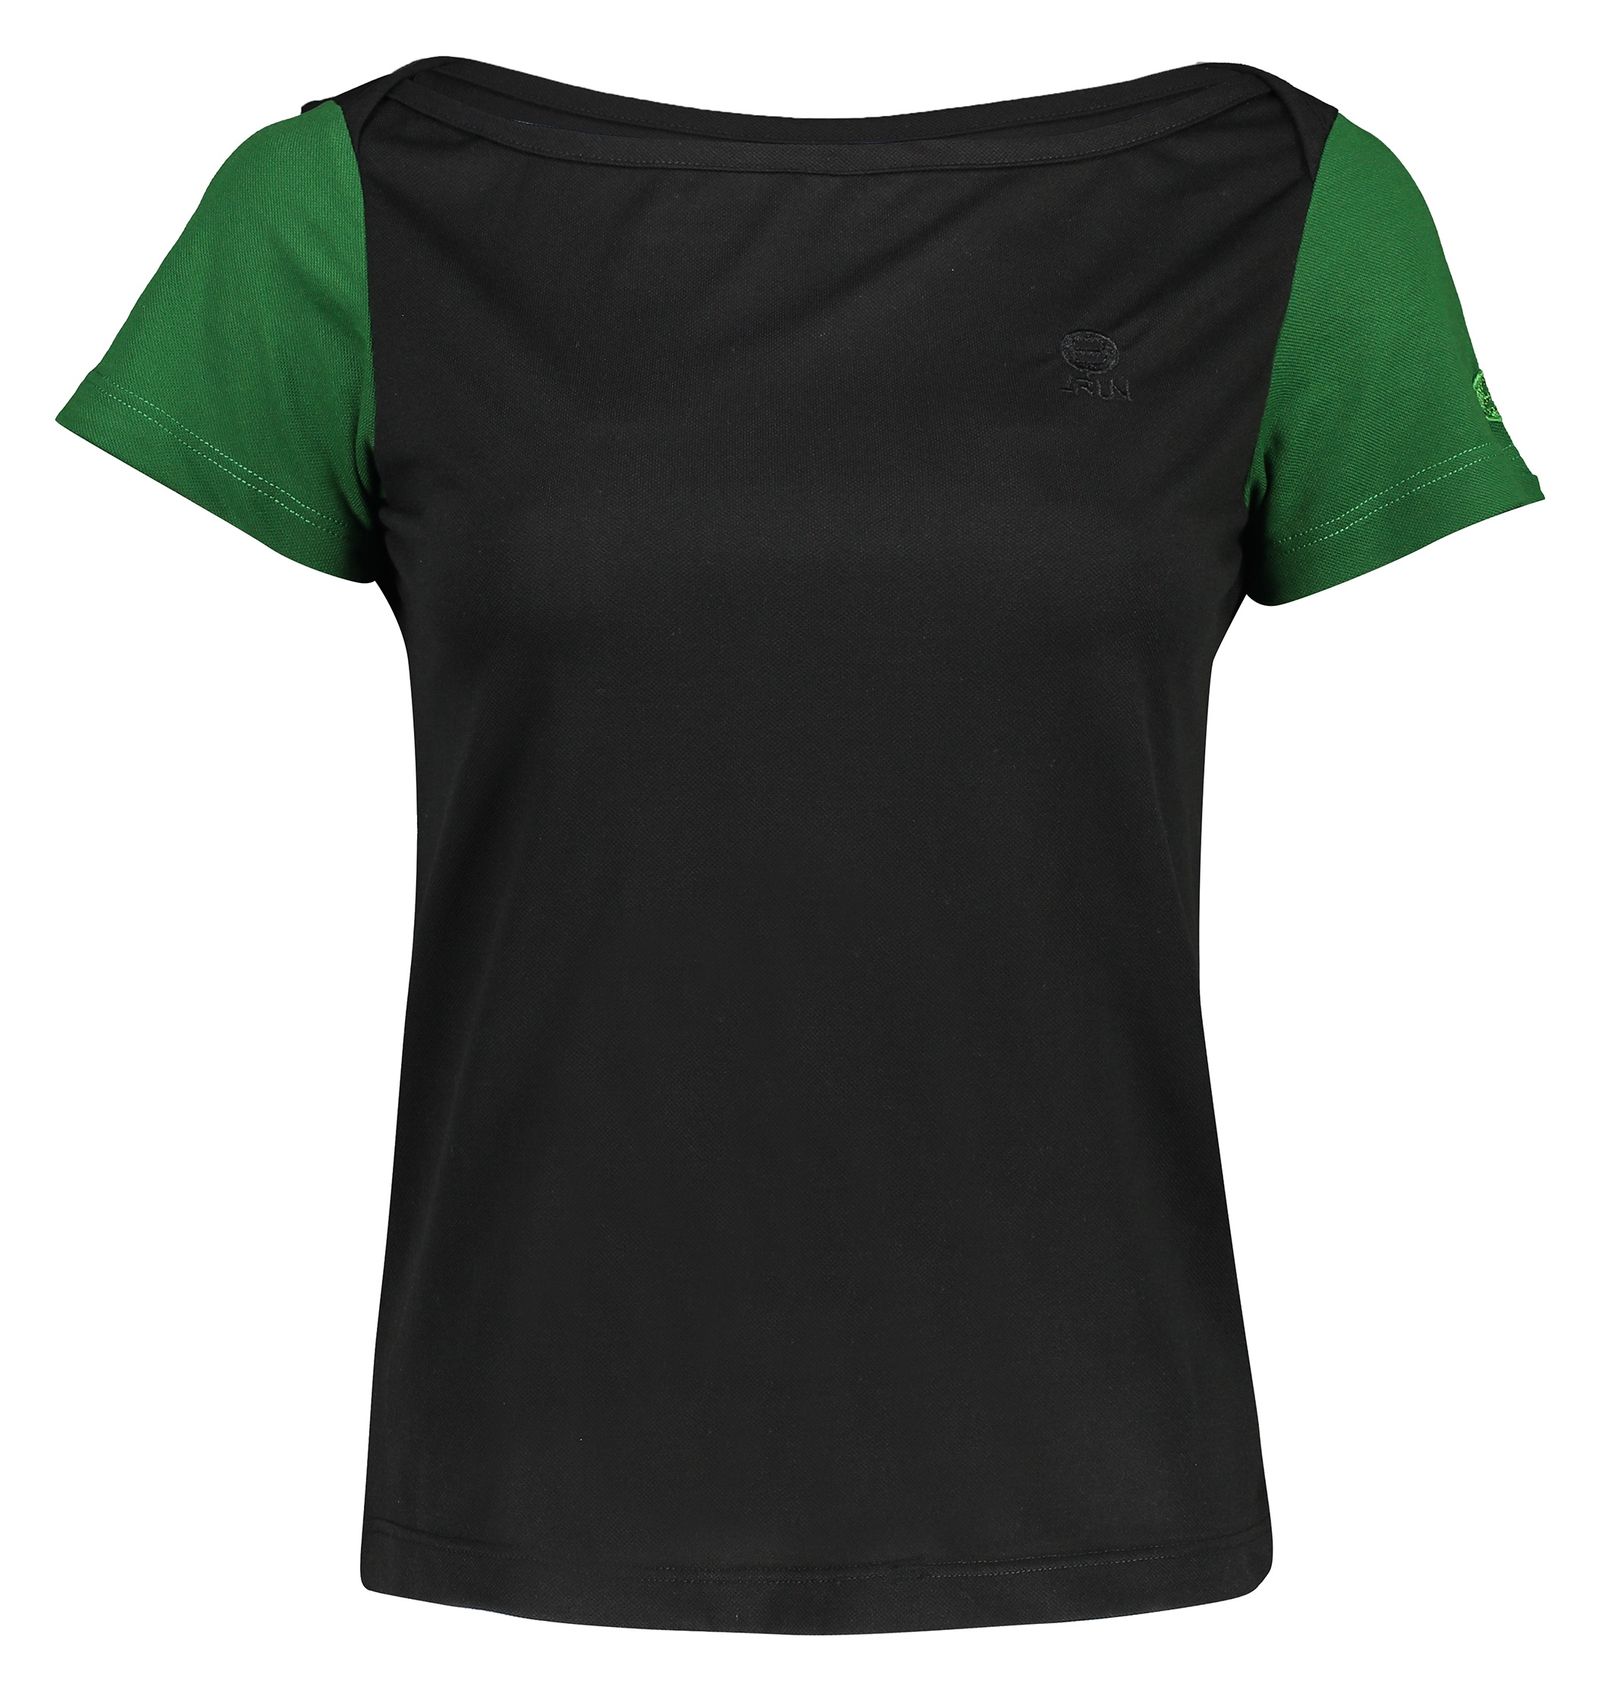 تی شرت ورزشی زنانه بی فور ران مدل 970324-9943 - مشکی سبز - 1